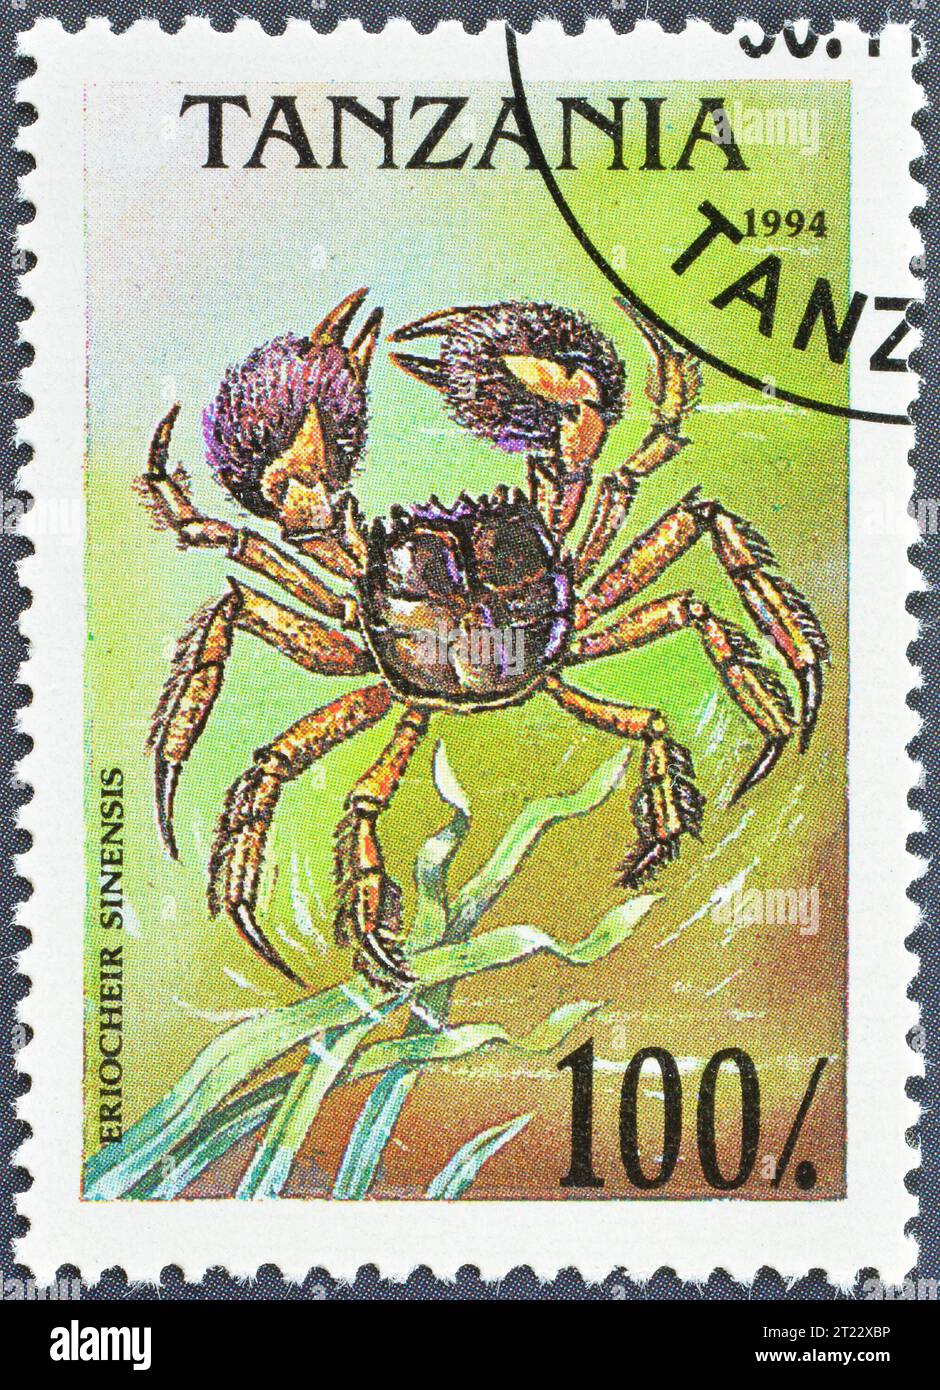 Timbre-poste annulé imprimé par la Tanzanie, qui montre le crabe chinois (Eriocheir sinensis), vers 1994. Banque D'Images